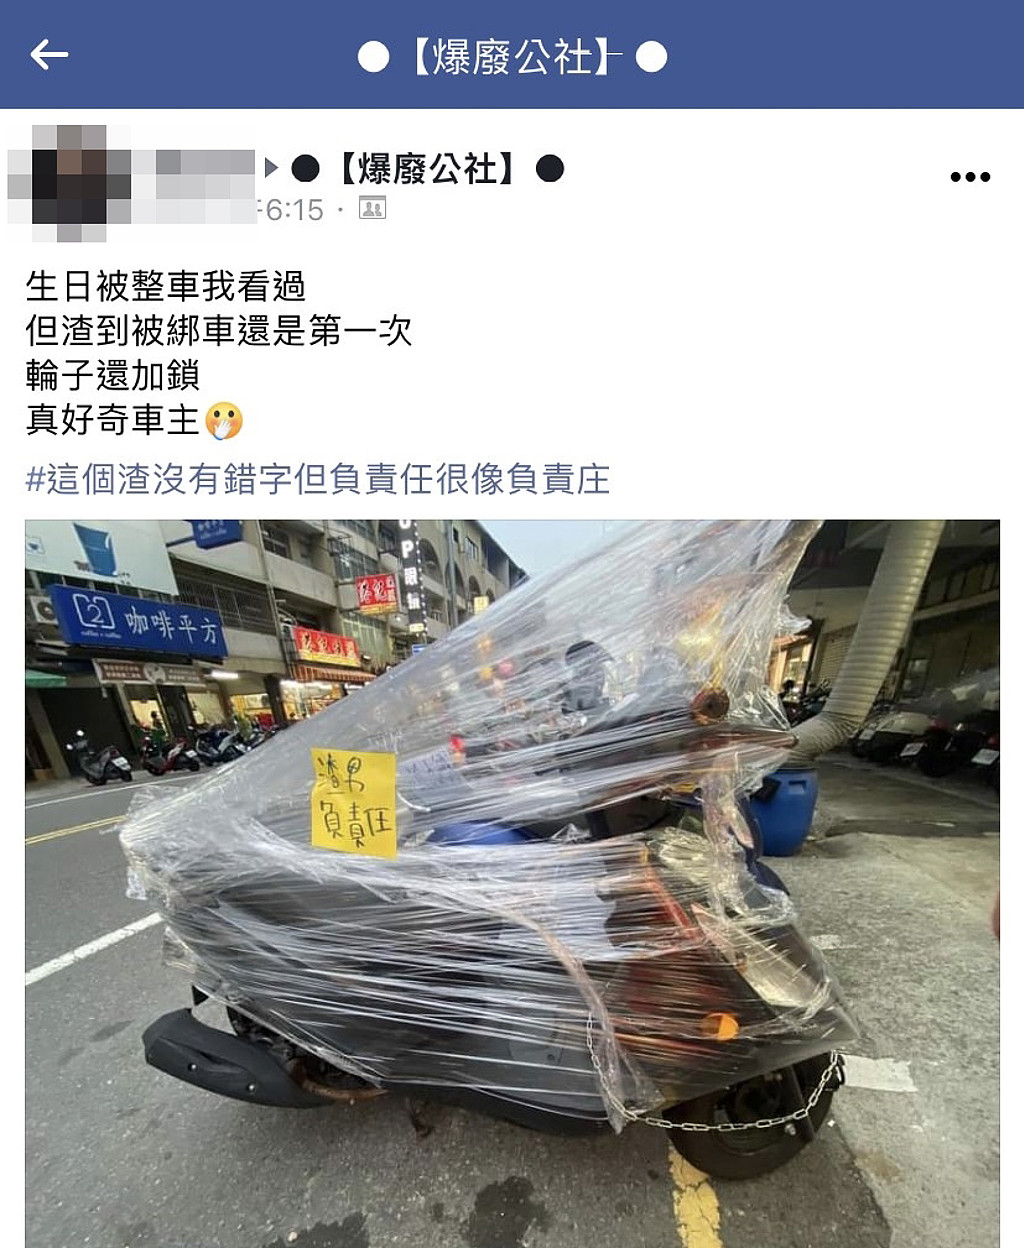 1名网友在路边发现1辆机车被塑胶膜狠狠封住，上头还贴纸条写「渣男负责任」，引发热议。 （翻摄自脸书「爆废公社」）